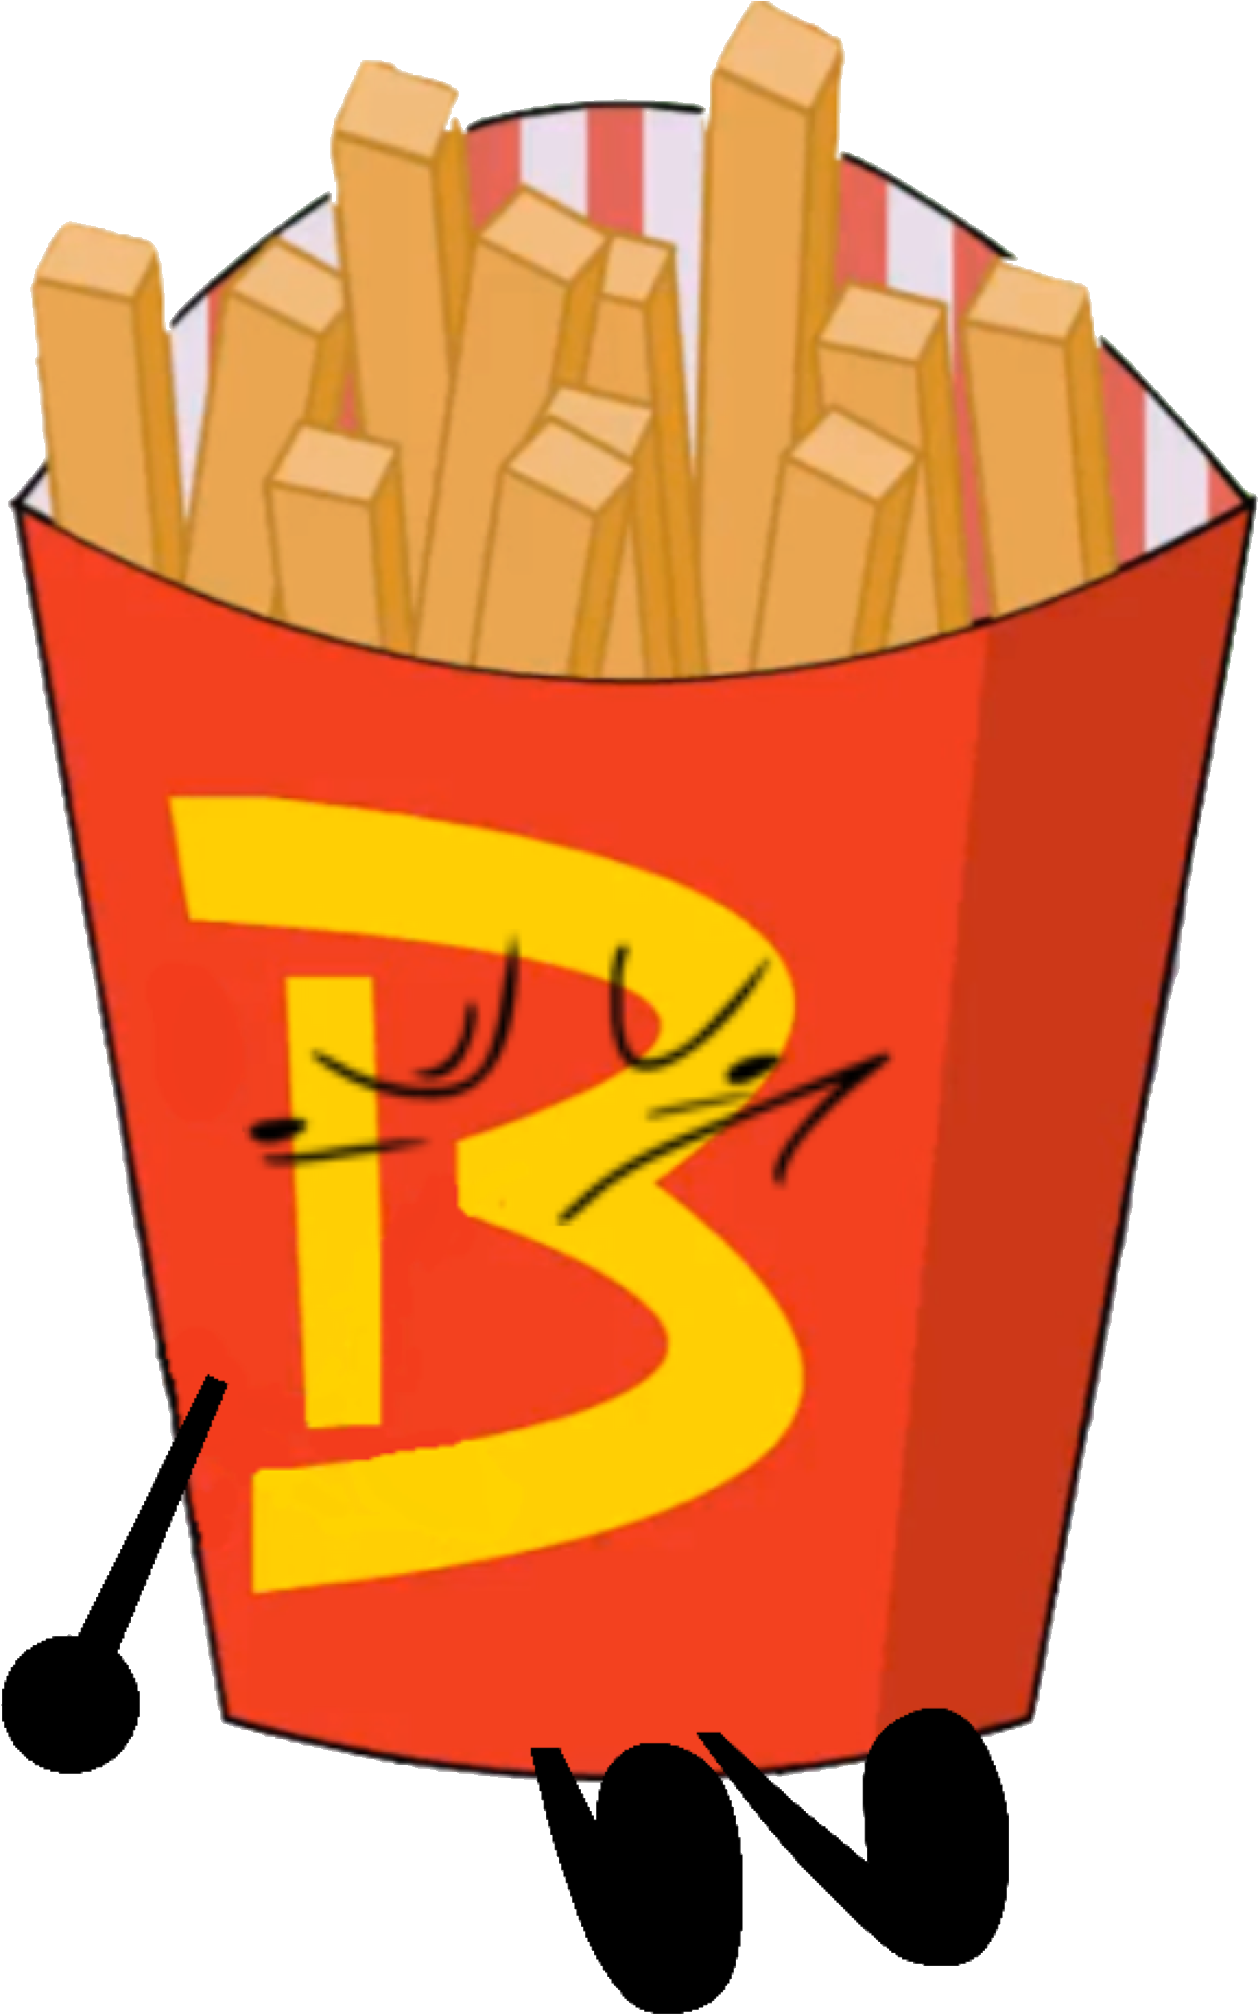 Fries - Fries Bfdi (1374x2048)